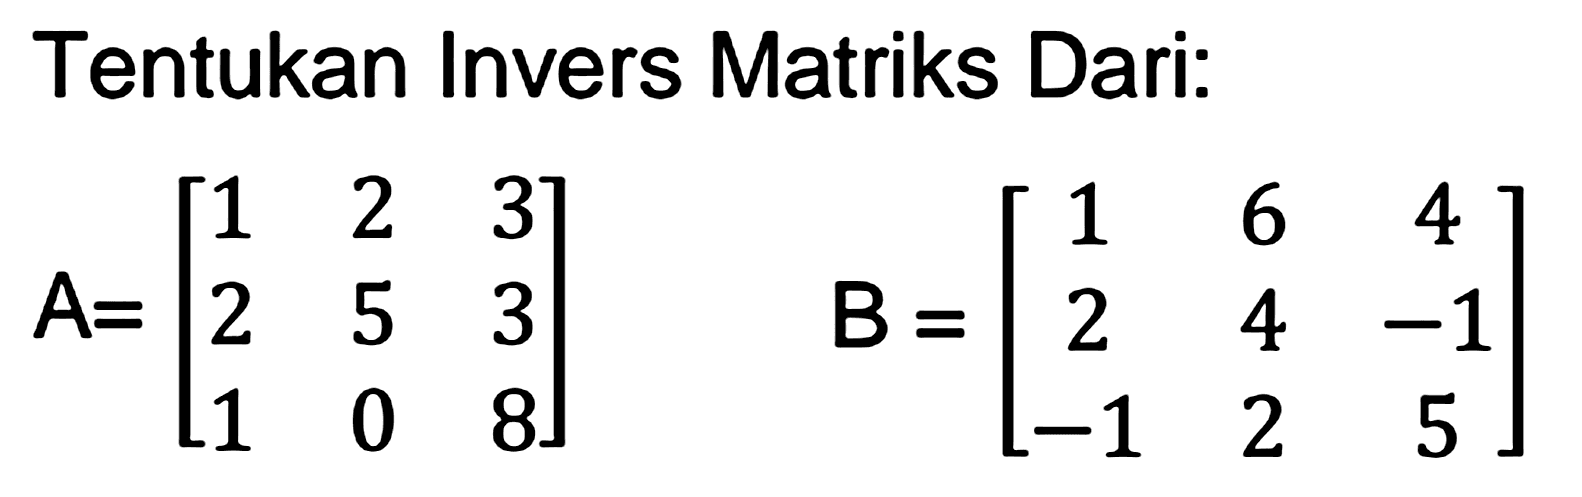 Tentukan Invers Matriks Dari:

A=[
1  2  3 
2  5  3 
1  0  8
]  B=[
1  6  4 
2  4  -1 
-1  2  5
]
